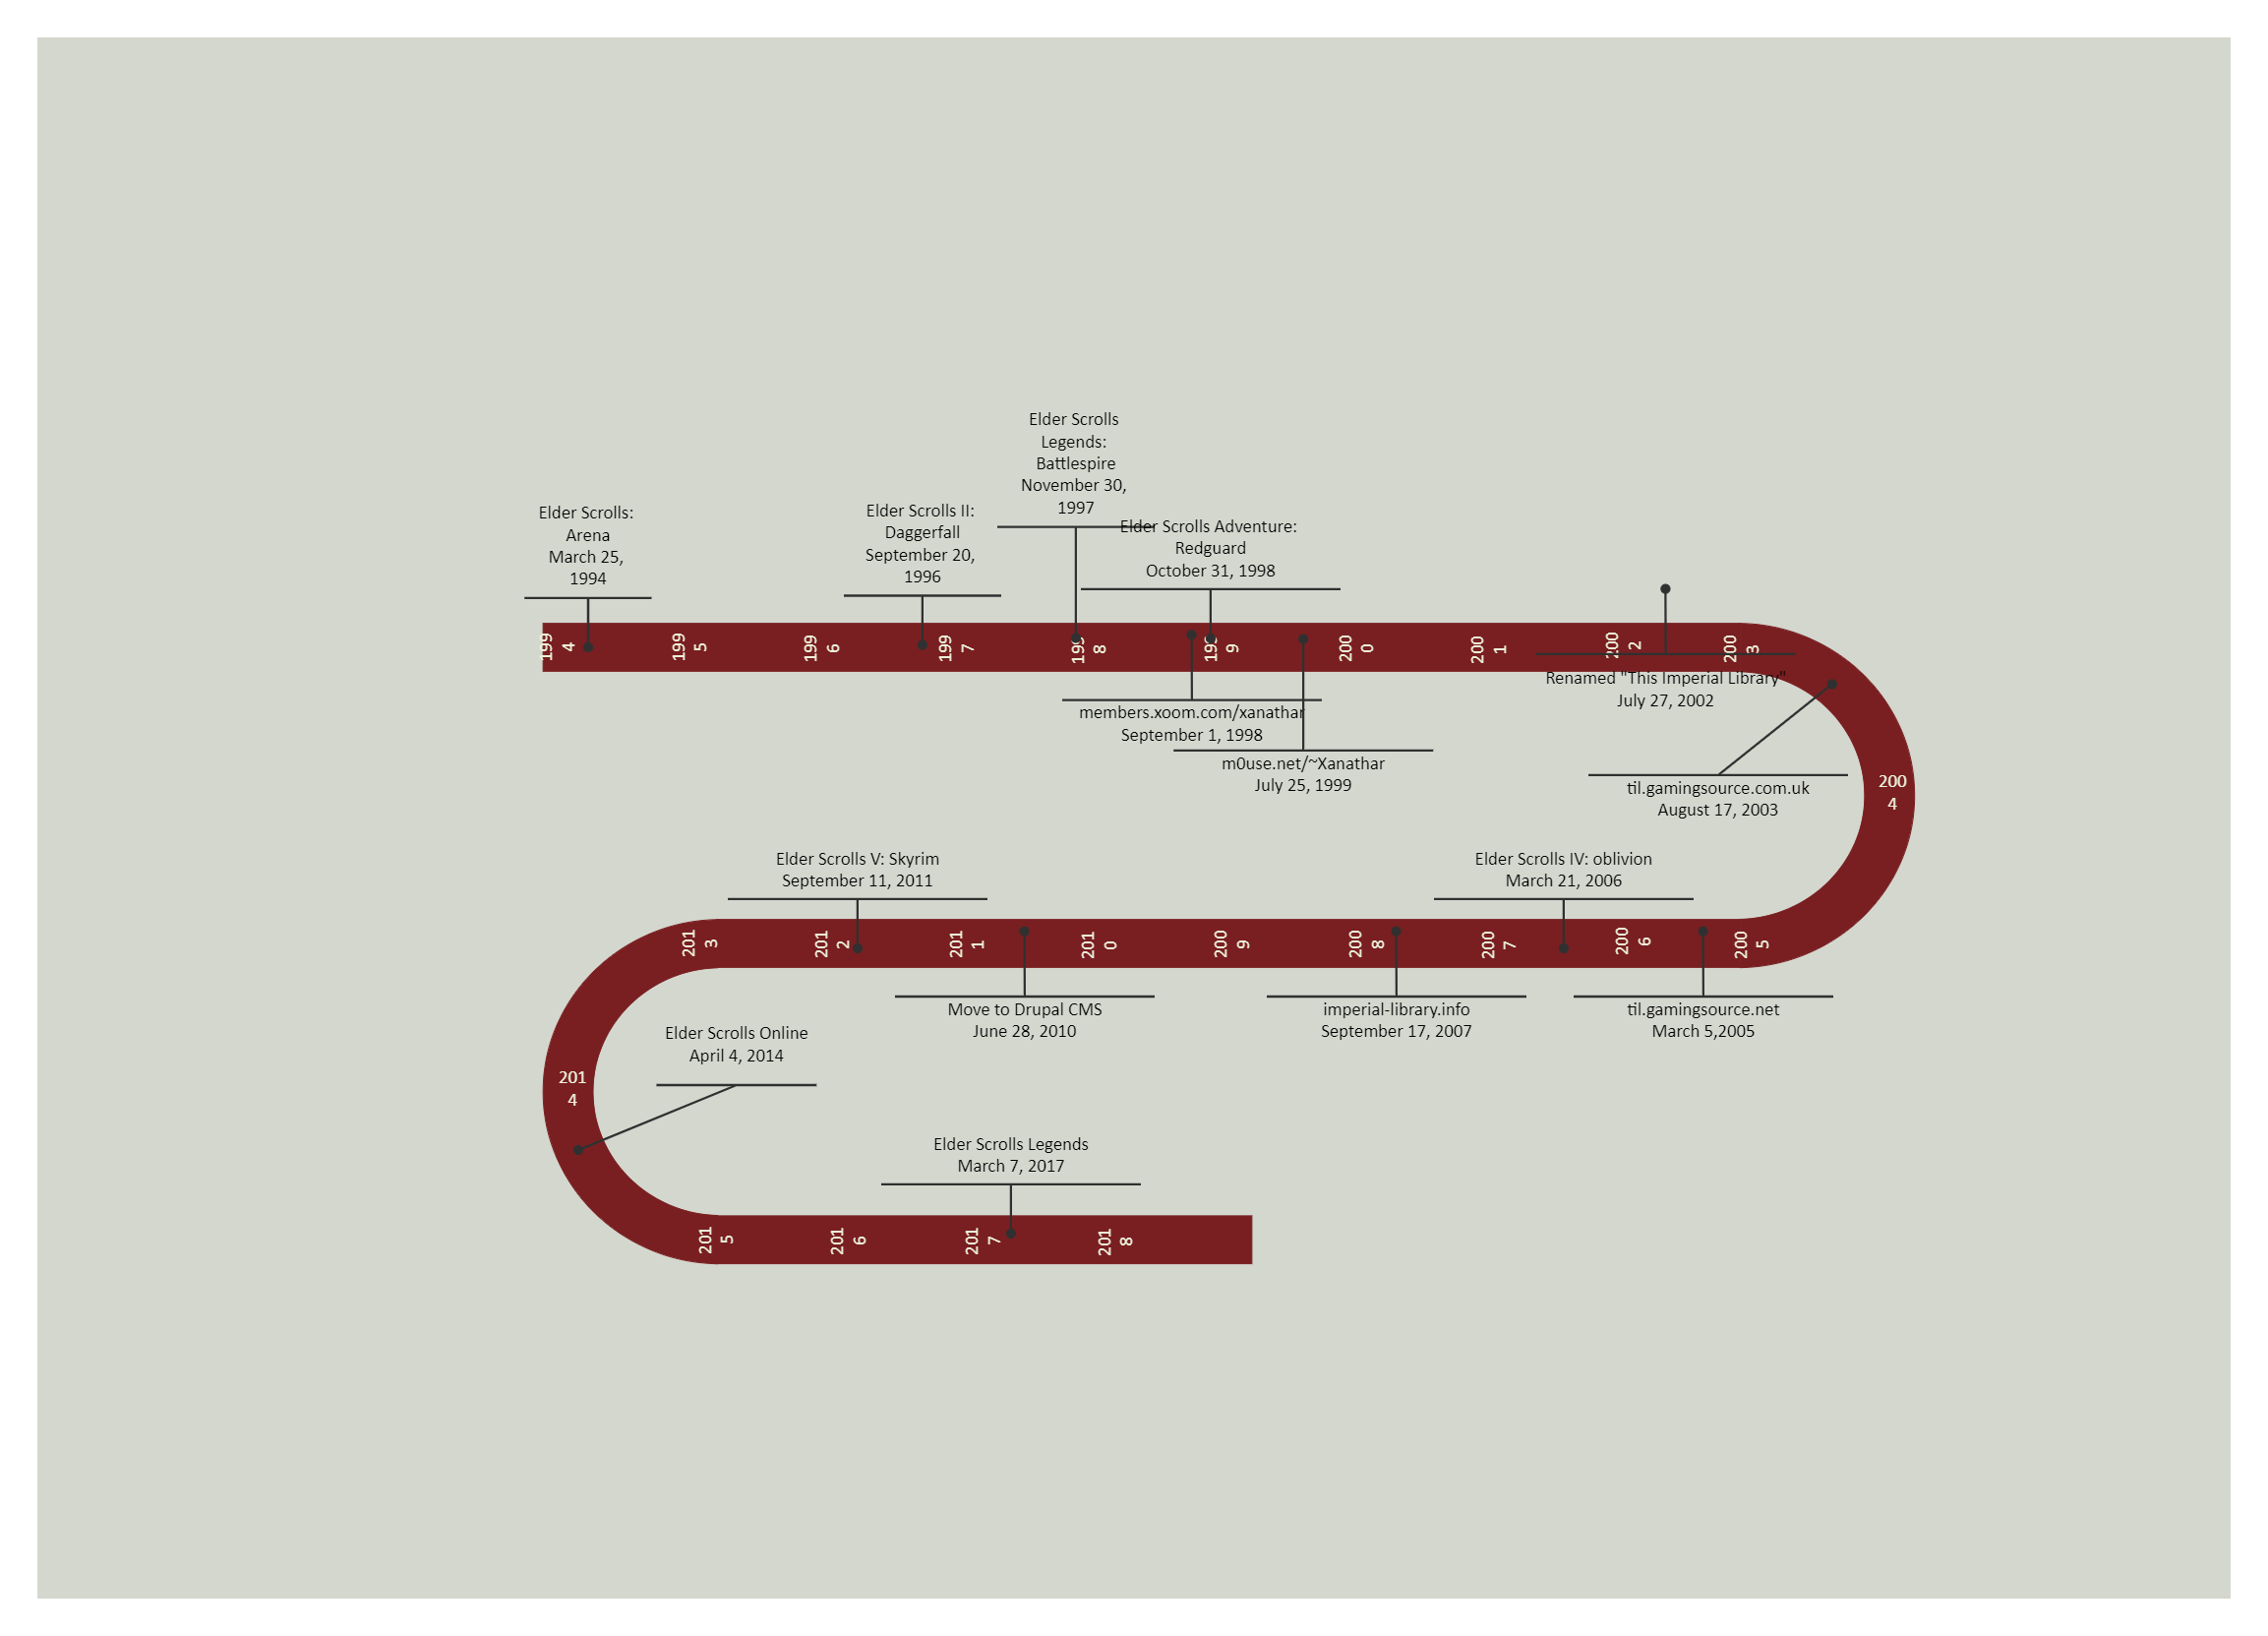 Elder Scrolls Timeline Diagram